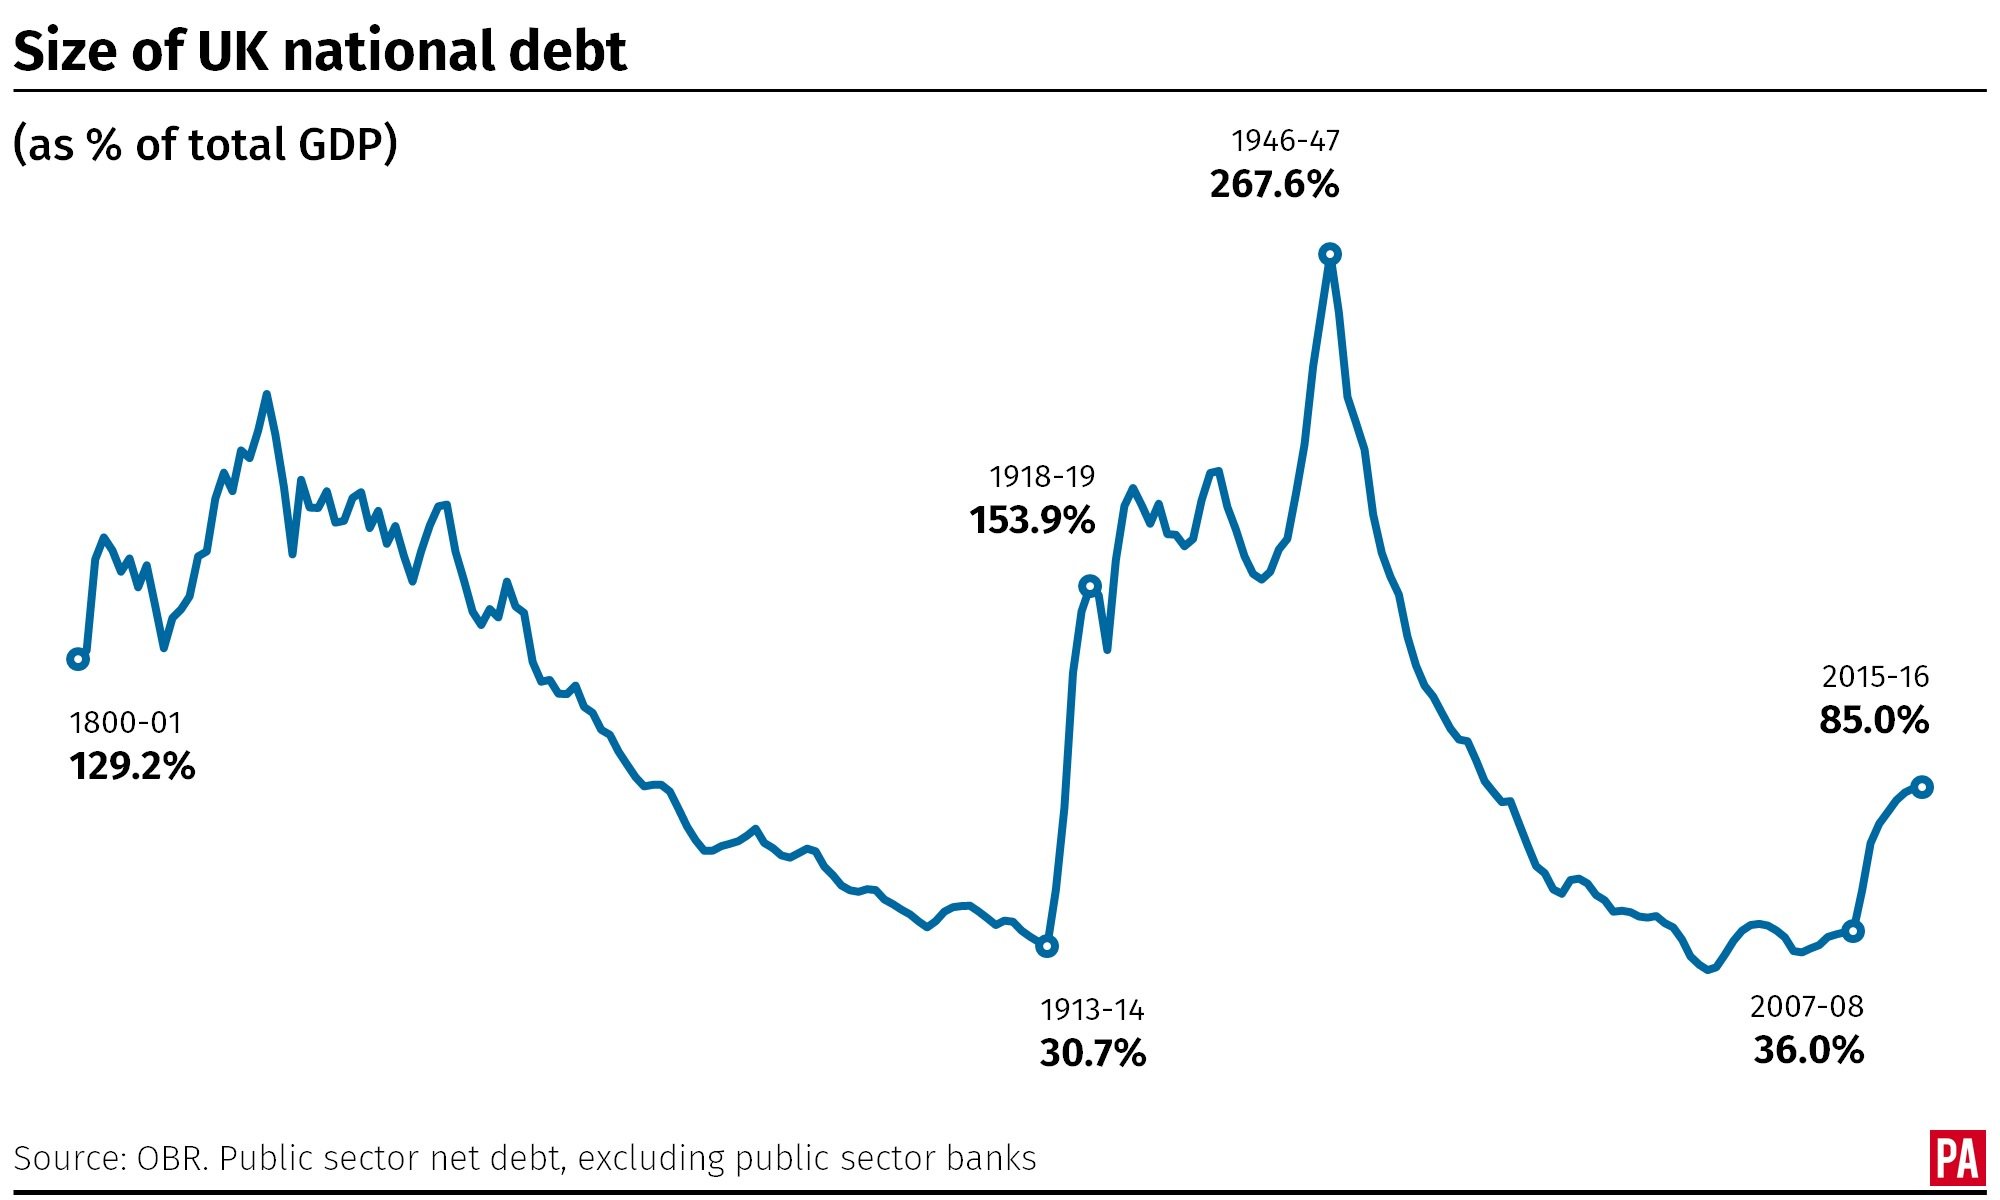 UK National Debt since 1800